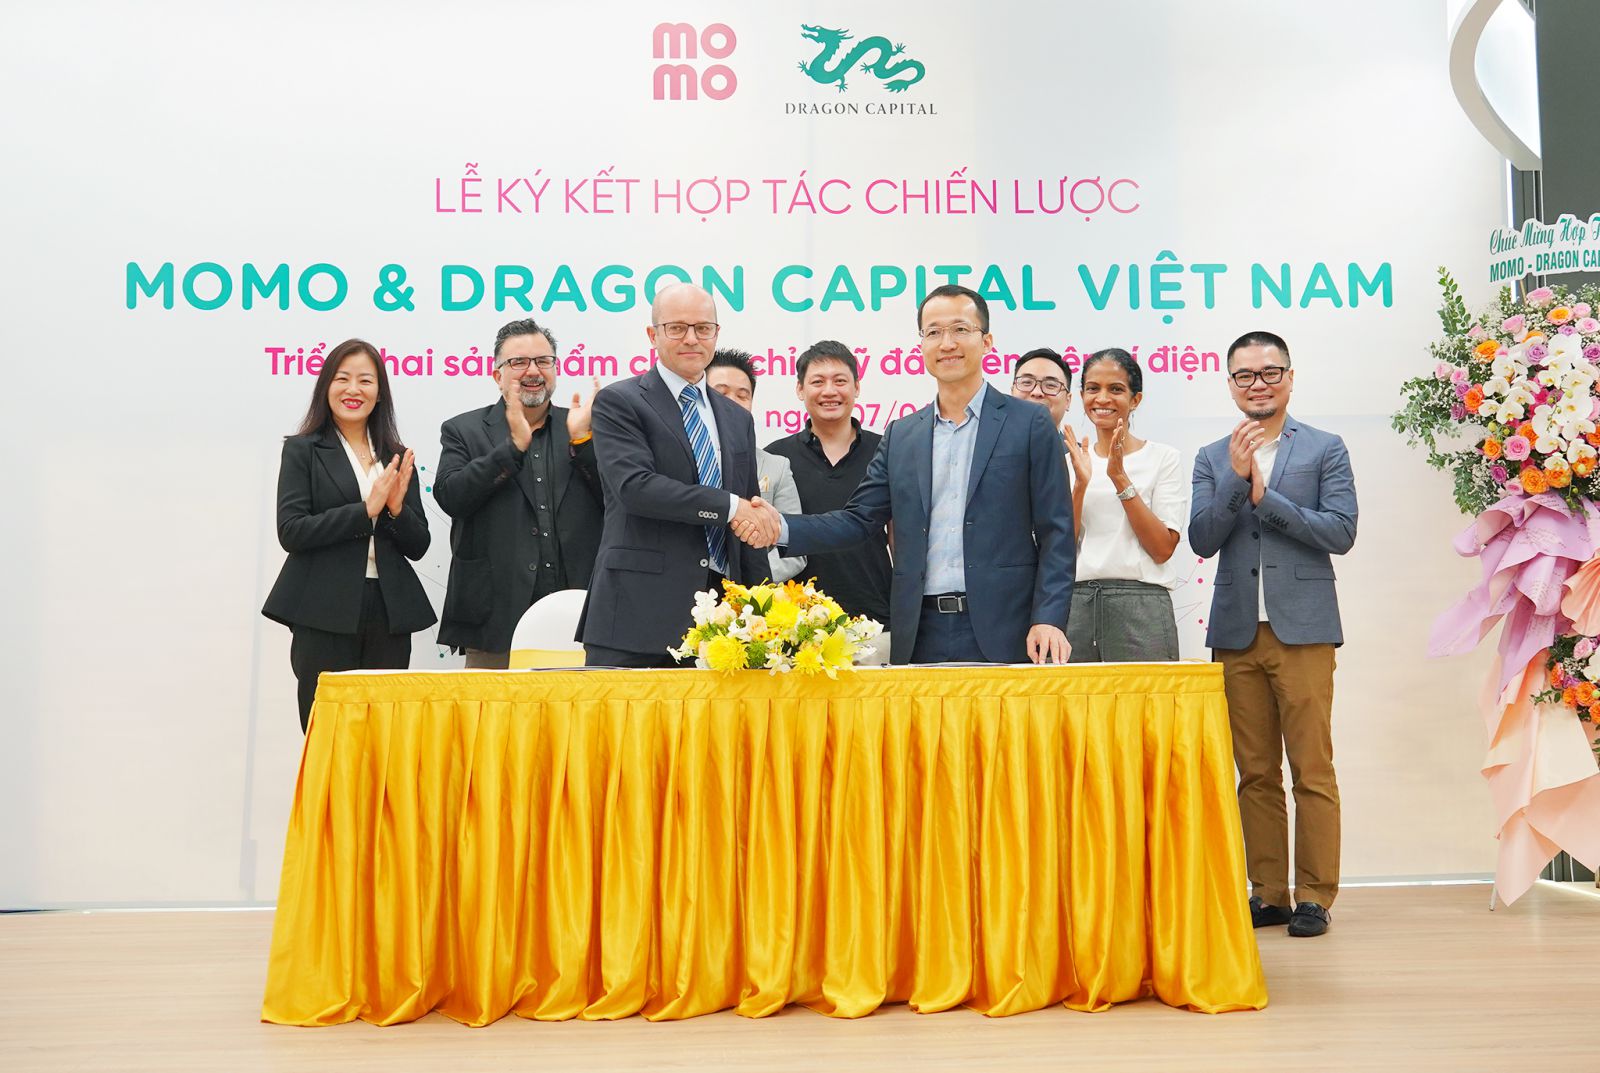 Lê ký kết hợp tác chiến lược Dragon Capital Việt Nam hợp tác MoMo